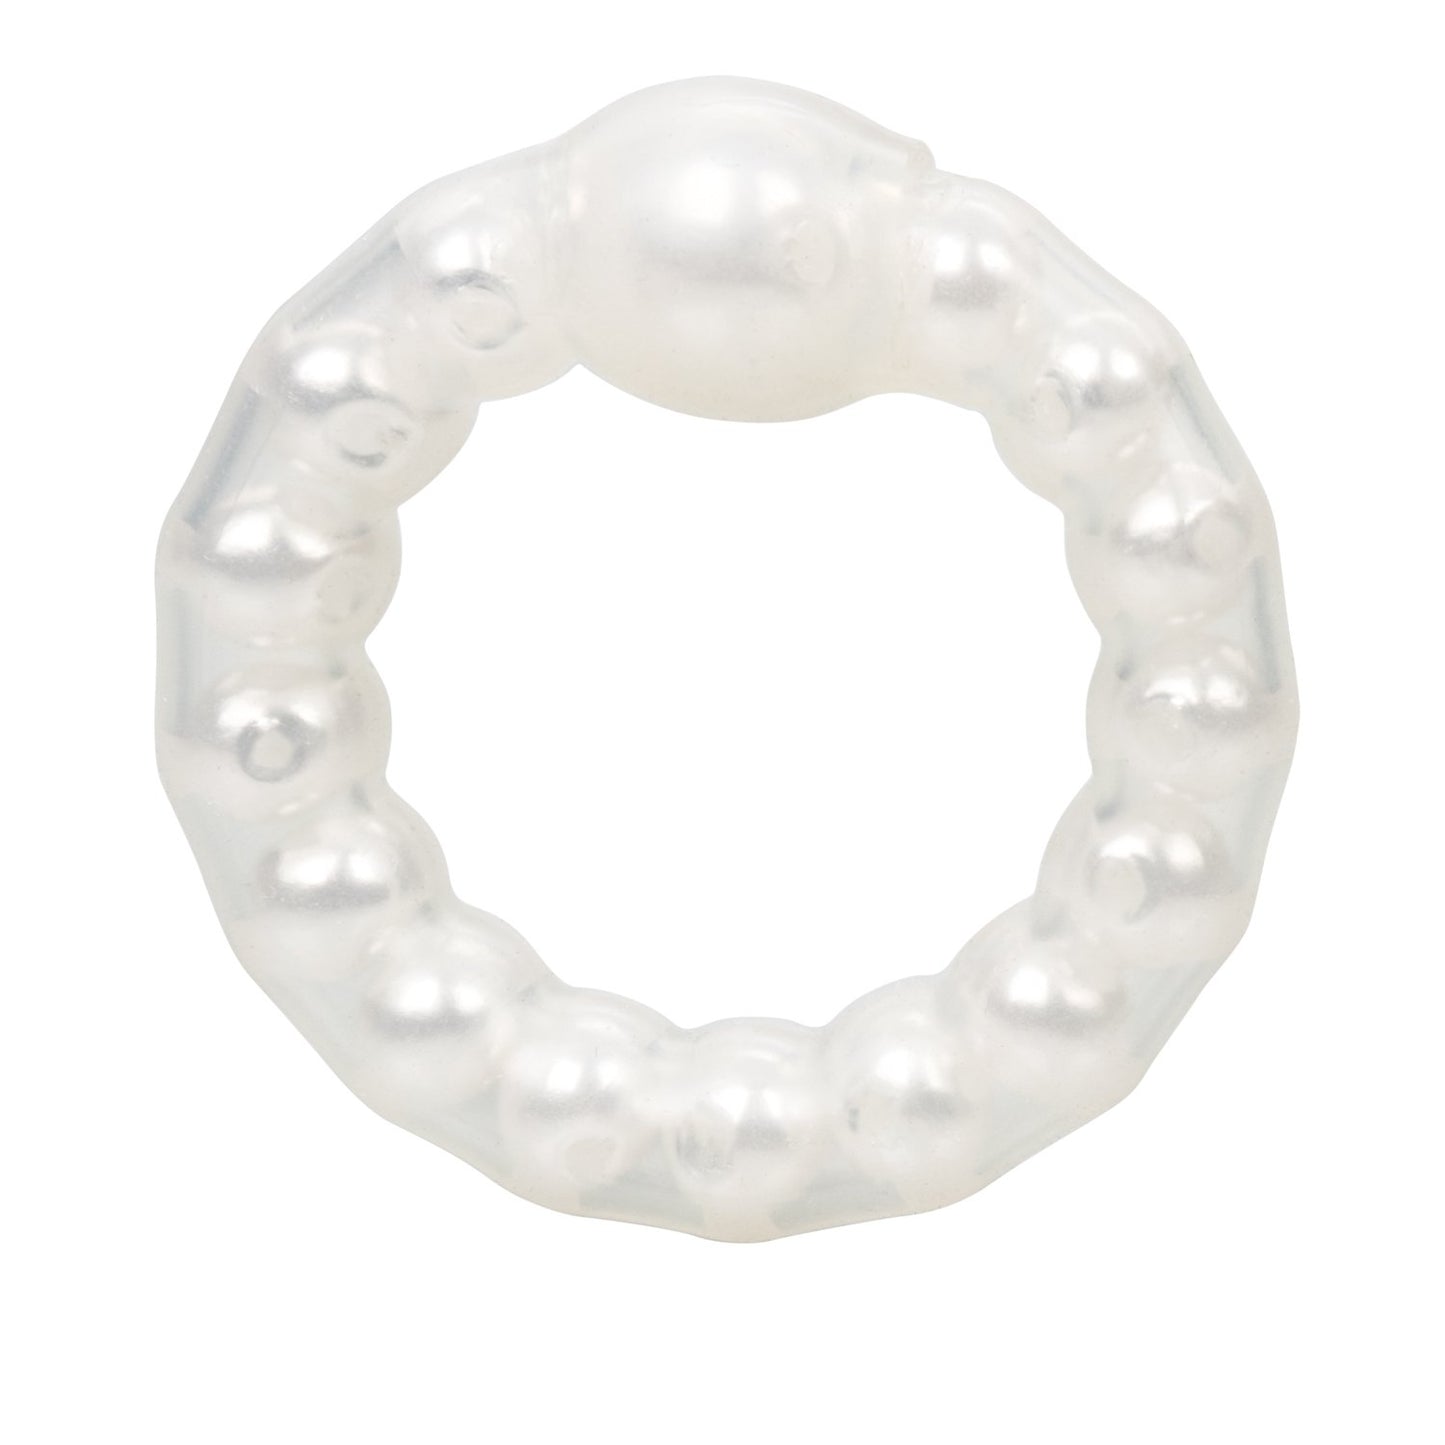 Pearl Beaded Prolong Ring